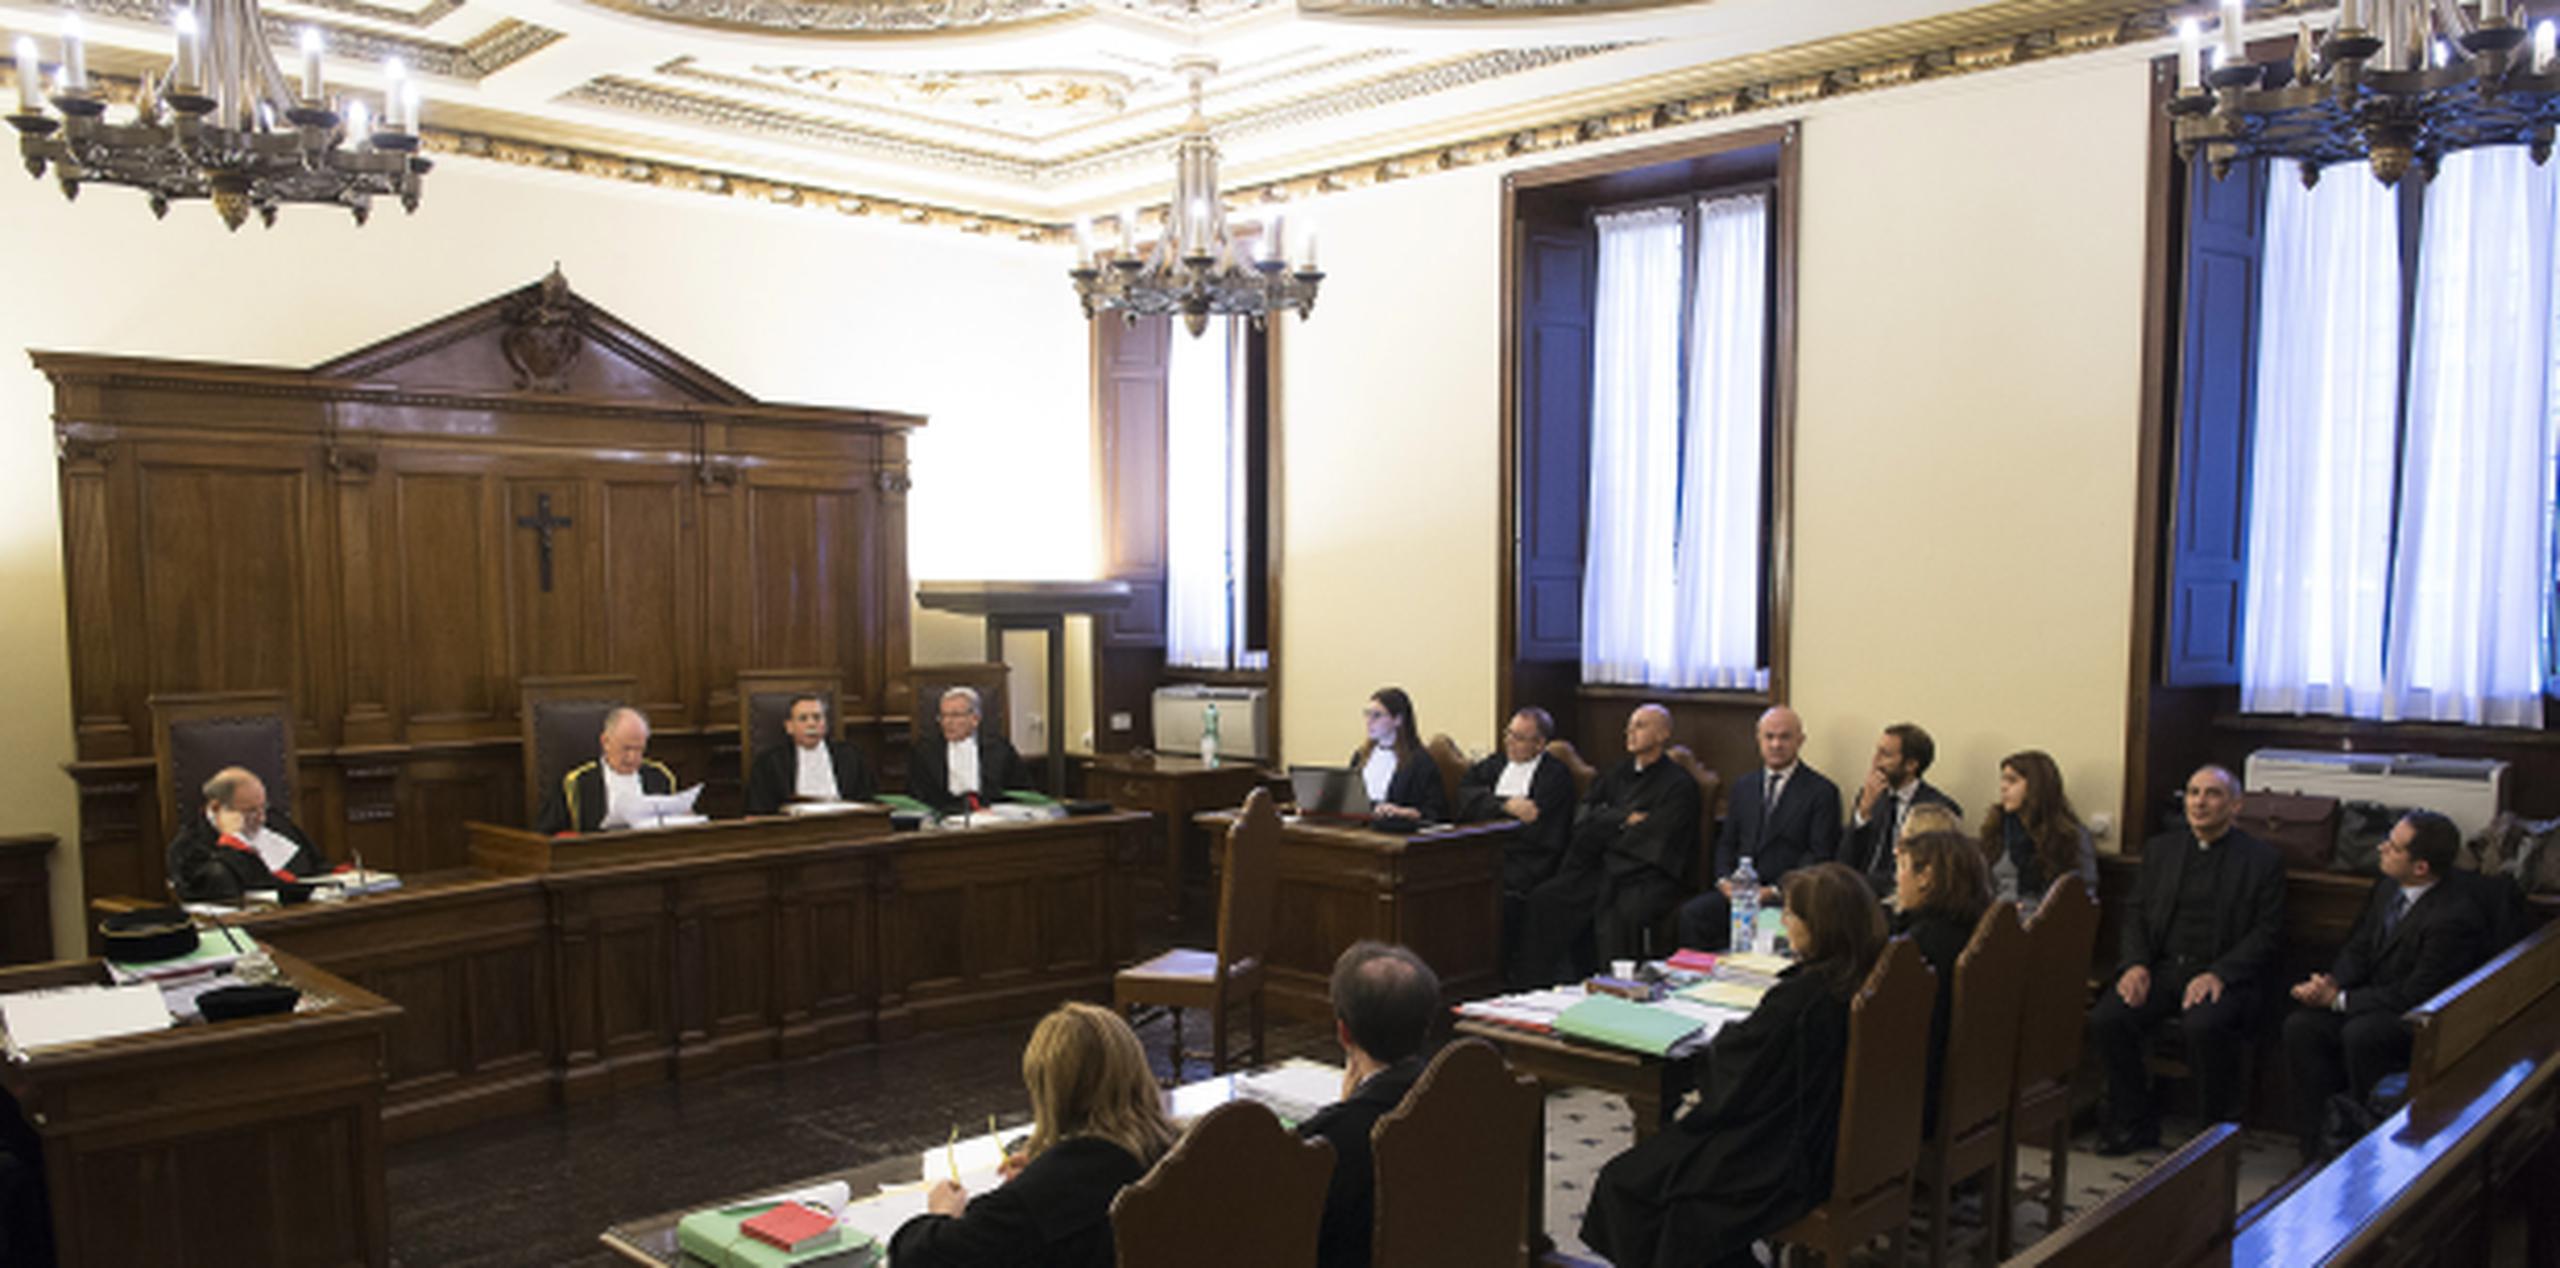 Vistazo a la sala judicial en Vaticano donde inició hoy el juicio denominado "Vatileaks". (AP)